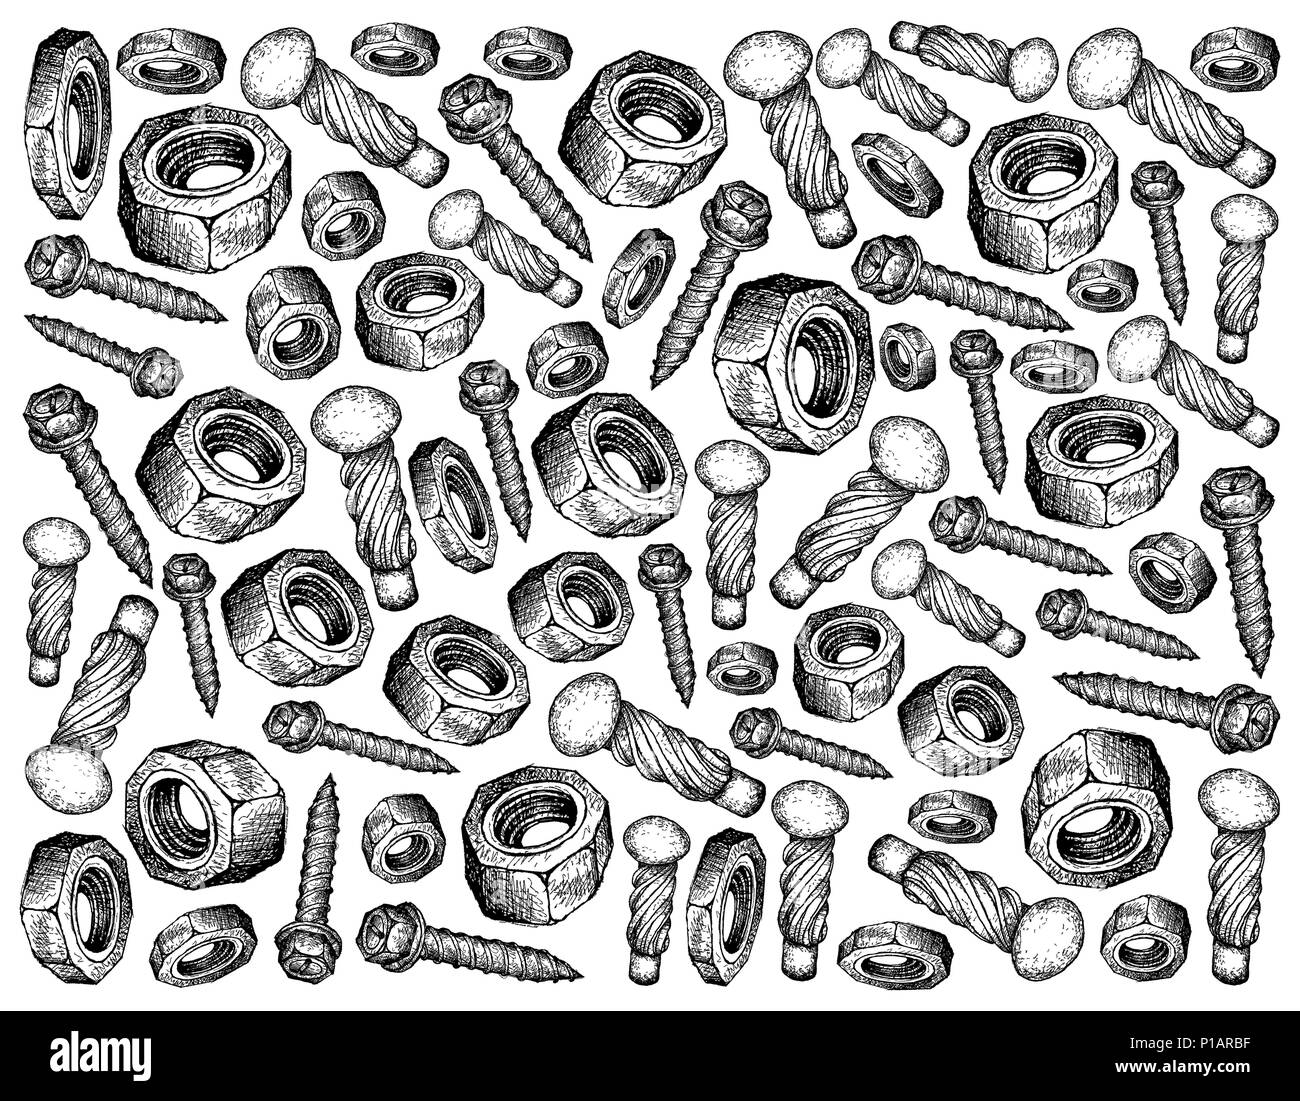 Fertigung und Industrie, Illustration Hand gezeichnete Skizze Hintergrund der  Hammer Schrauben, Blech Schrauben und Muttern. Eine Art von Fas  Stockfotografie - Alamy